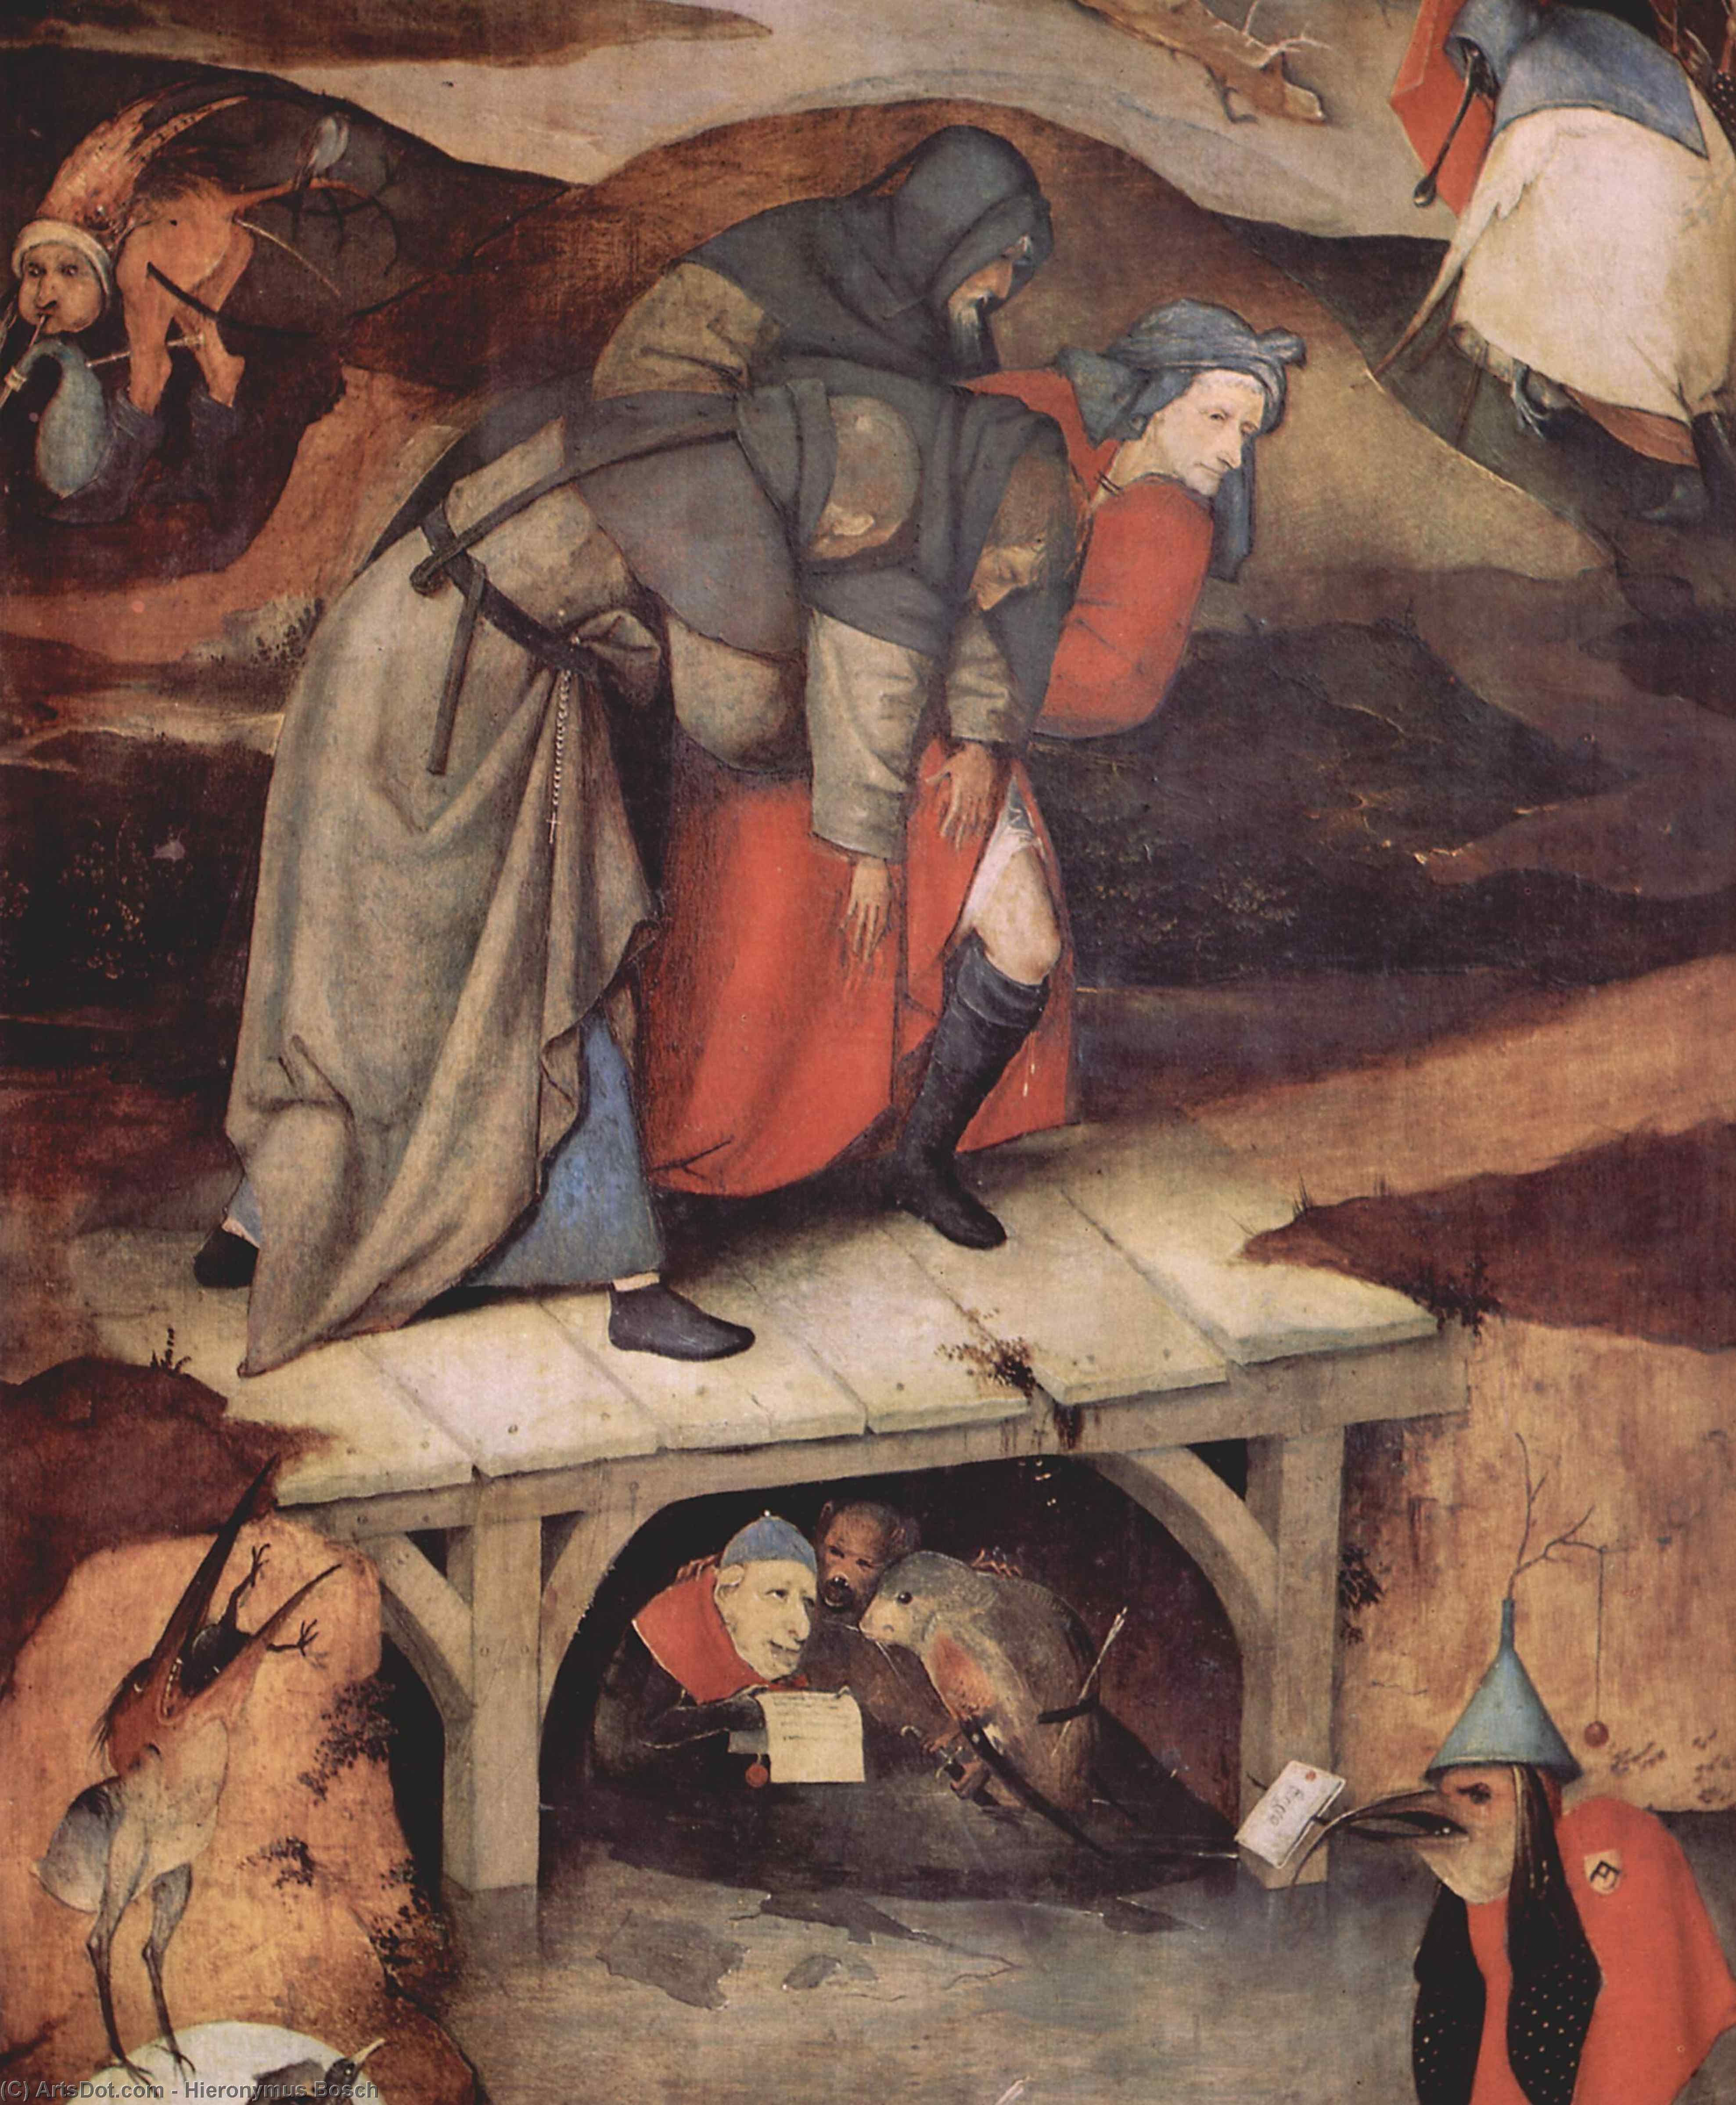 Wikioo.org – L'Enciclopedia delle Belle Arti - Pittura, Opere di Hieronymus Bosch - Il Temptation of Cattedrale di st .  Anthony ( particolare )